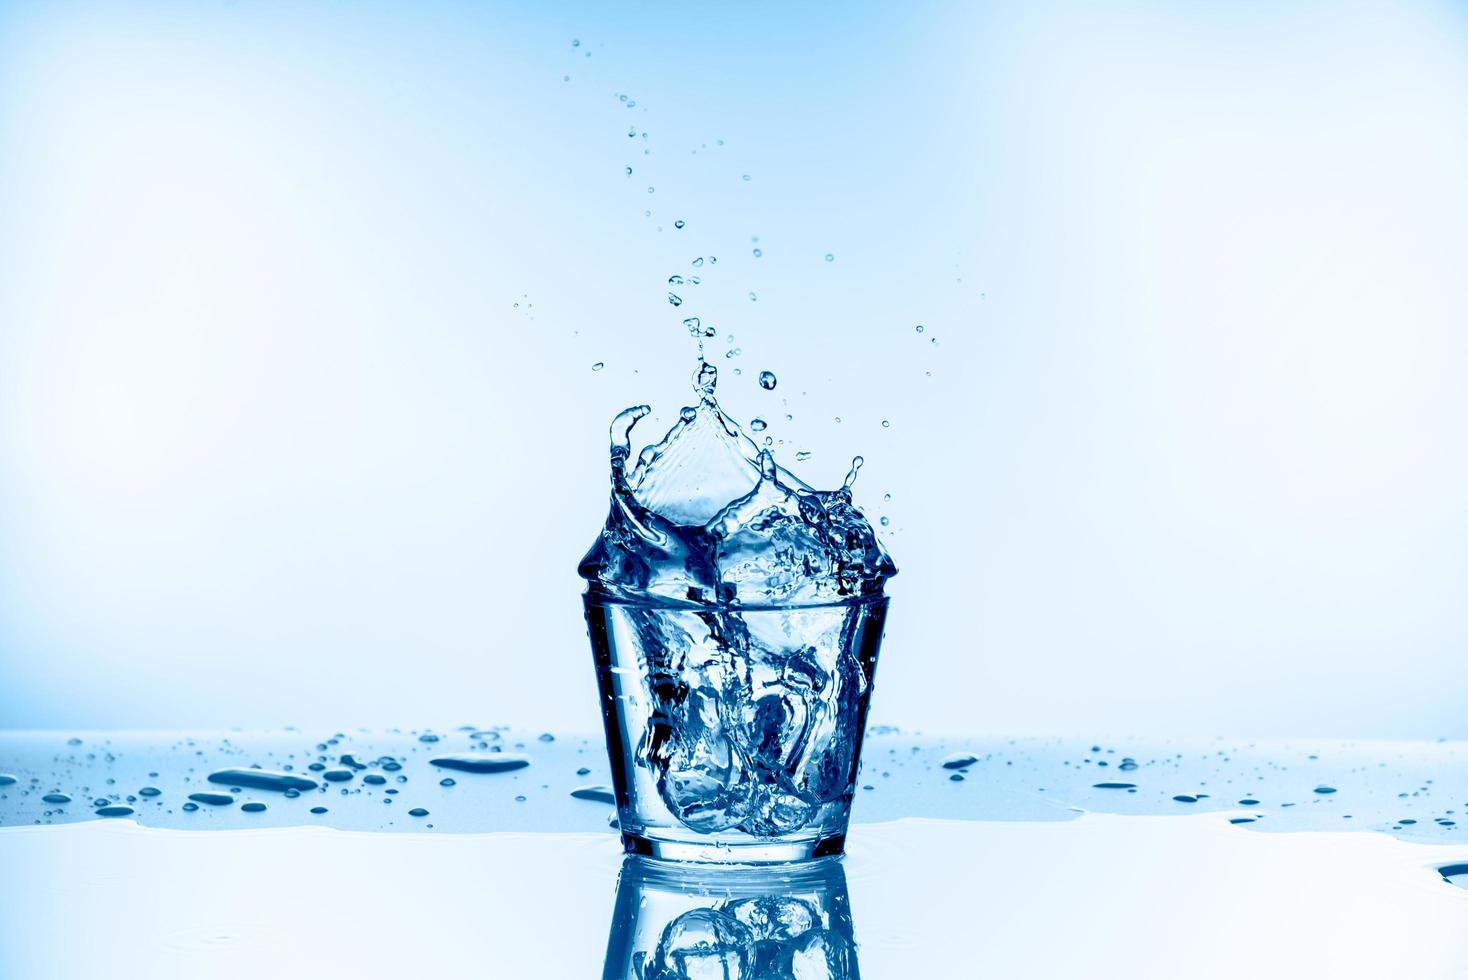 ghiaccio caduto nel bicchiere con spruzzi d'acqua dal vetro isolato su sfondo blu foto